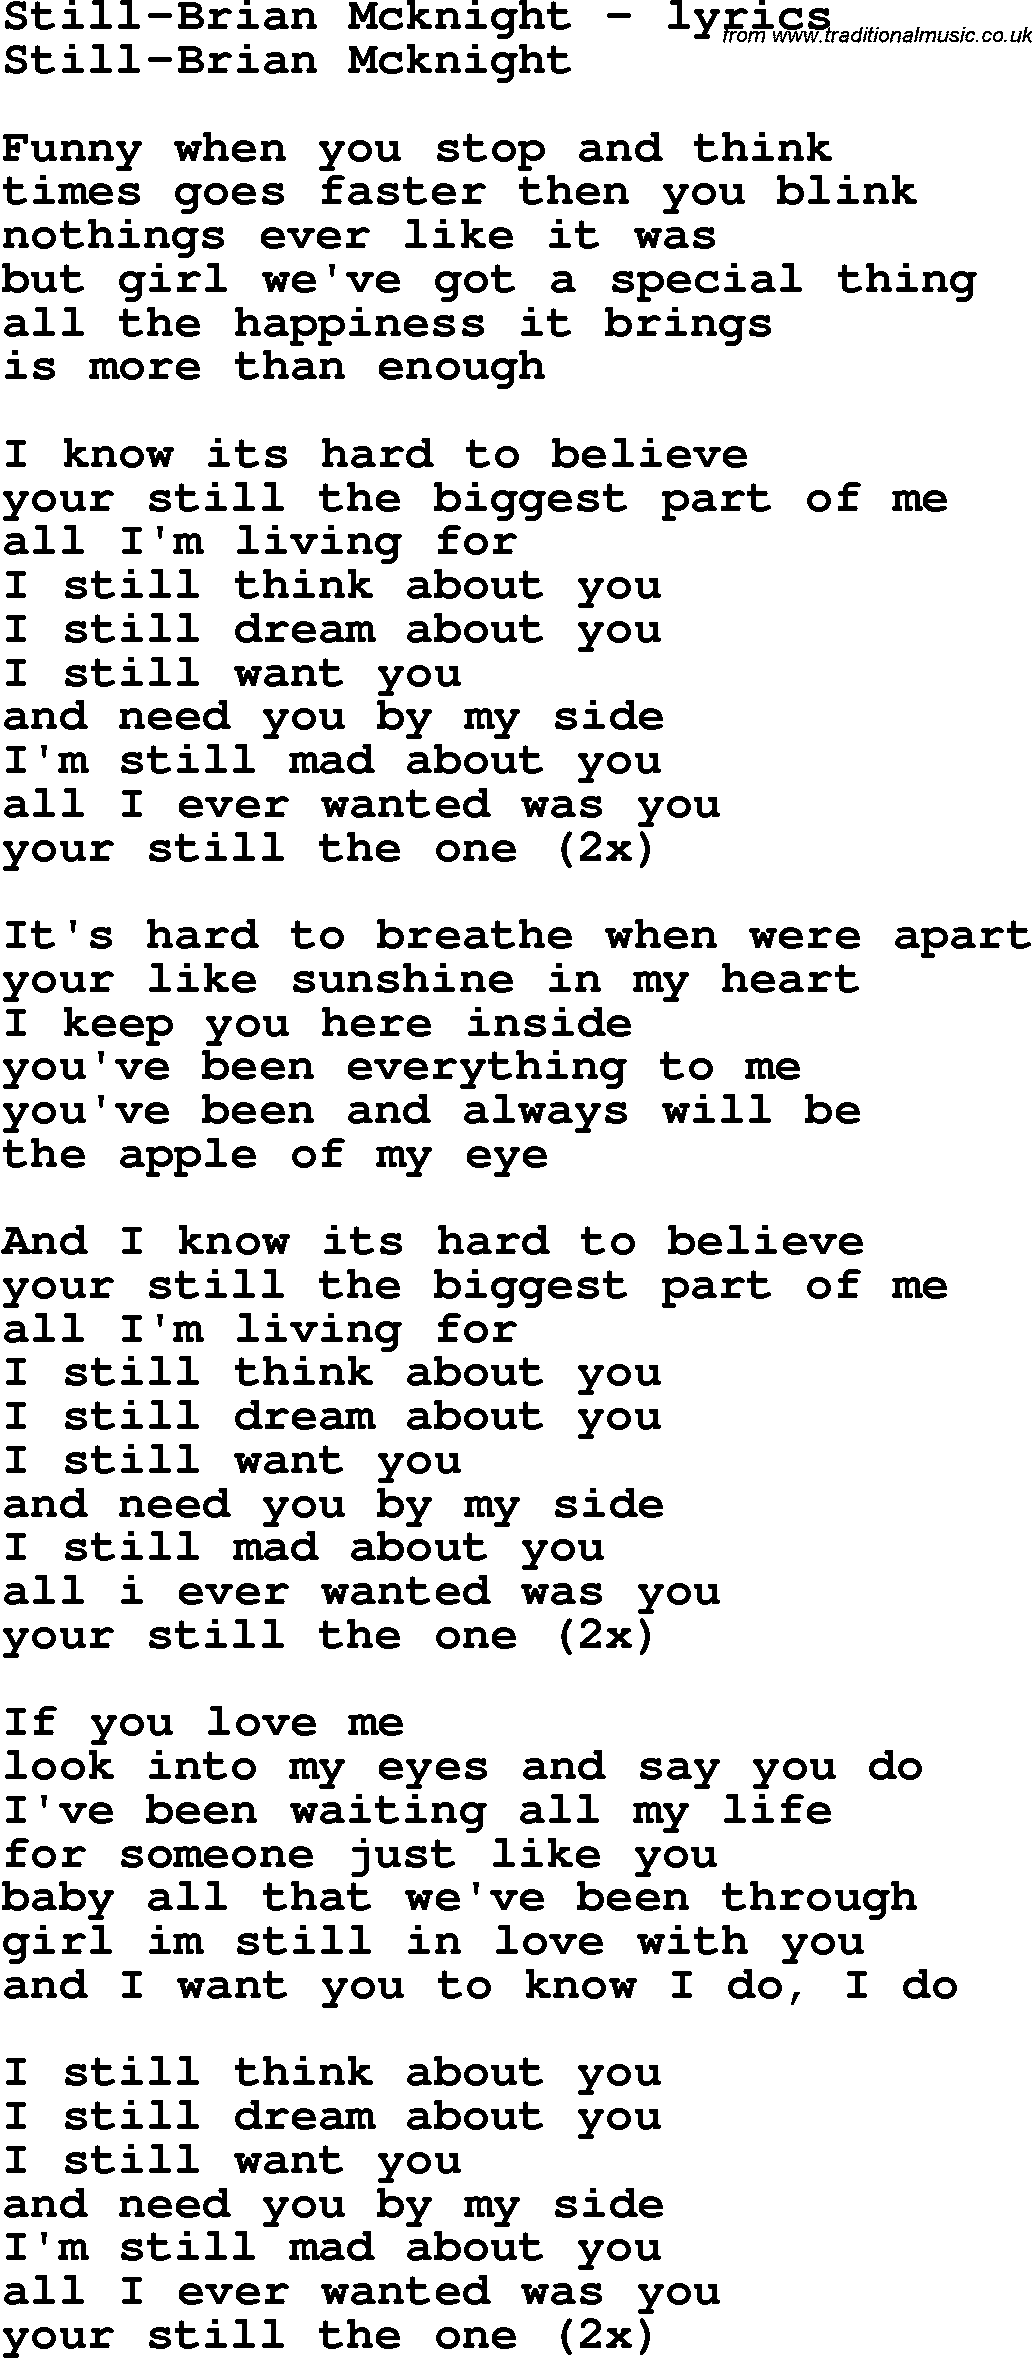 Love Song Lyrics for: Still-Brian Mcknight